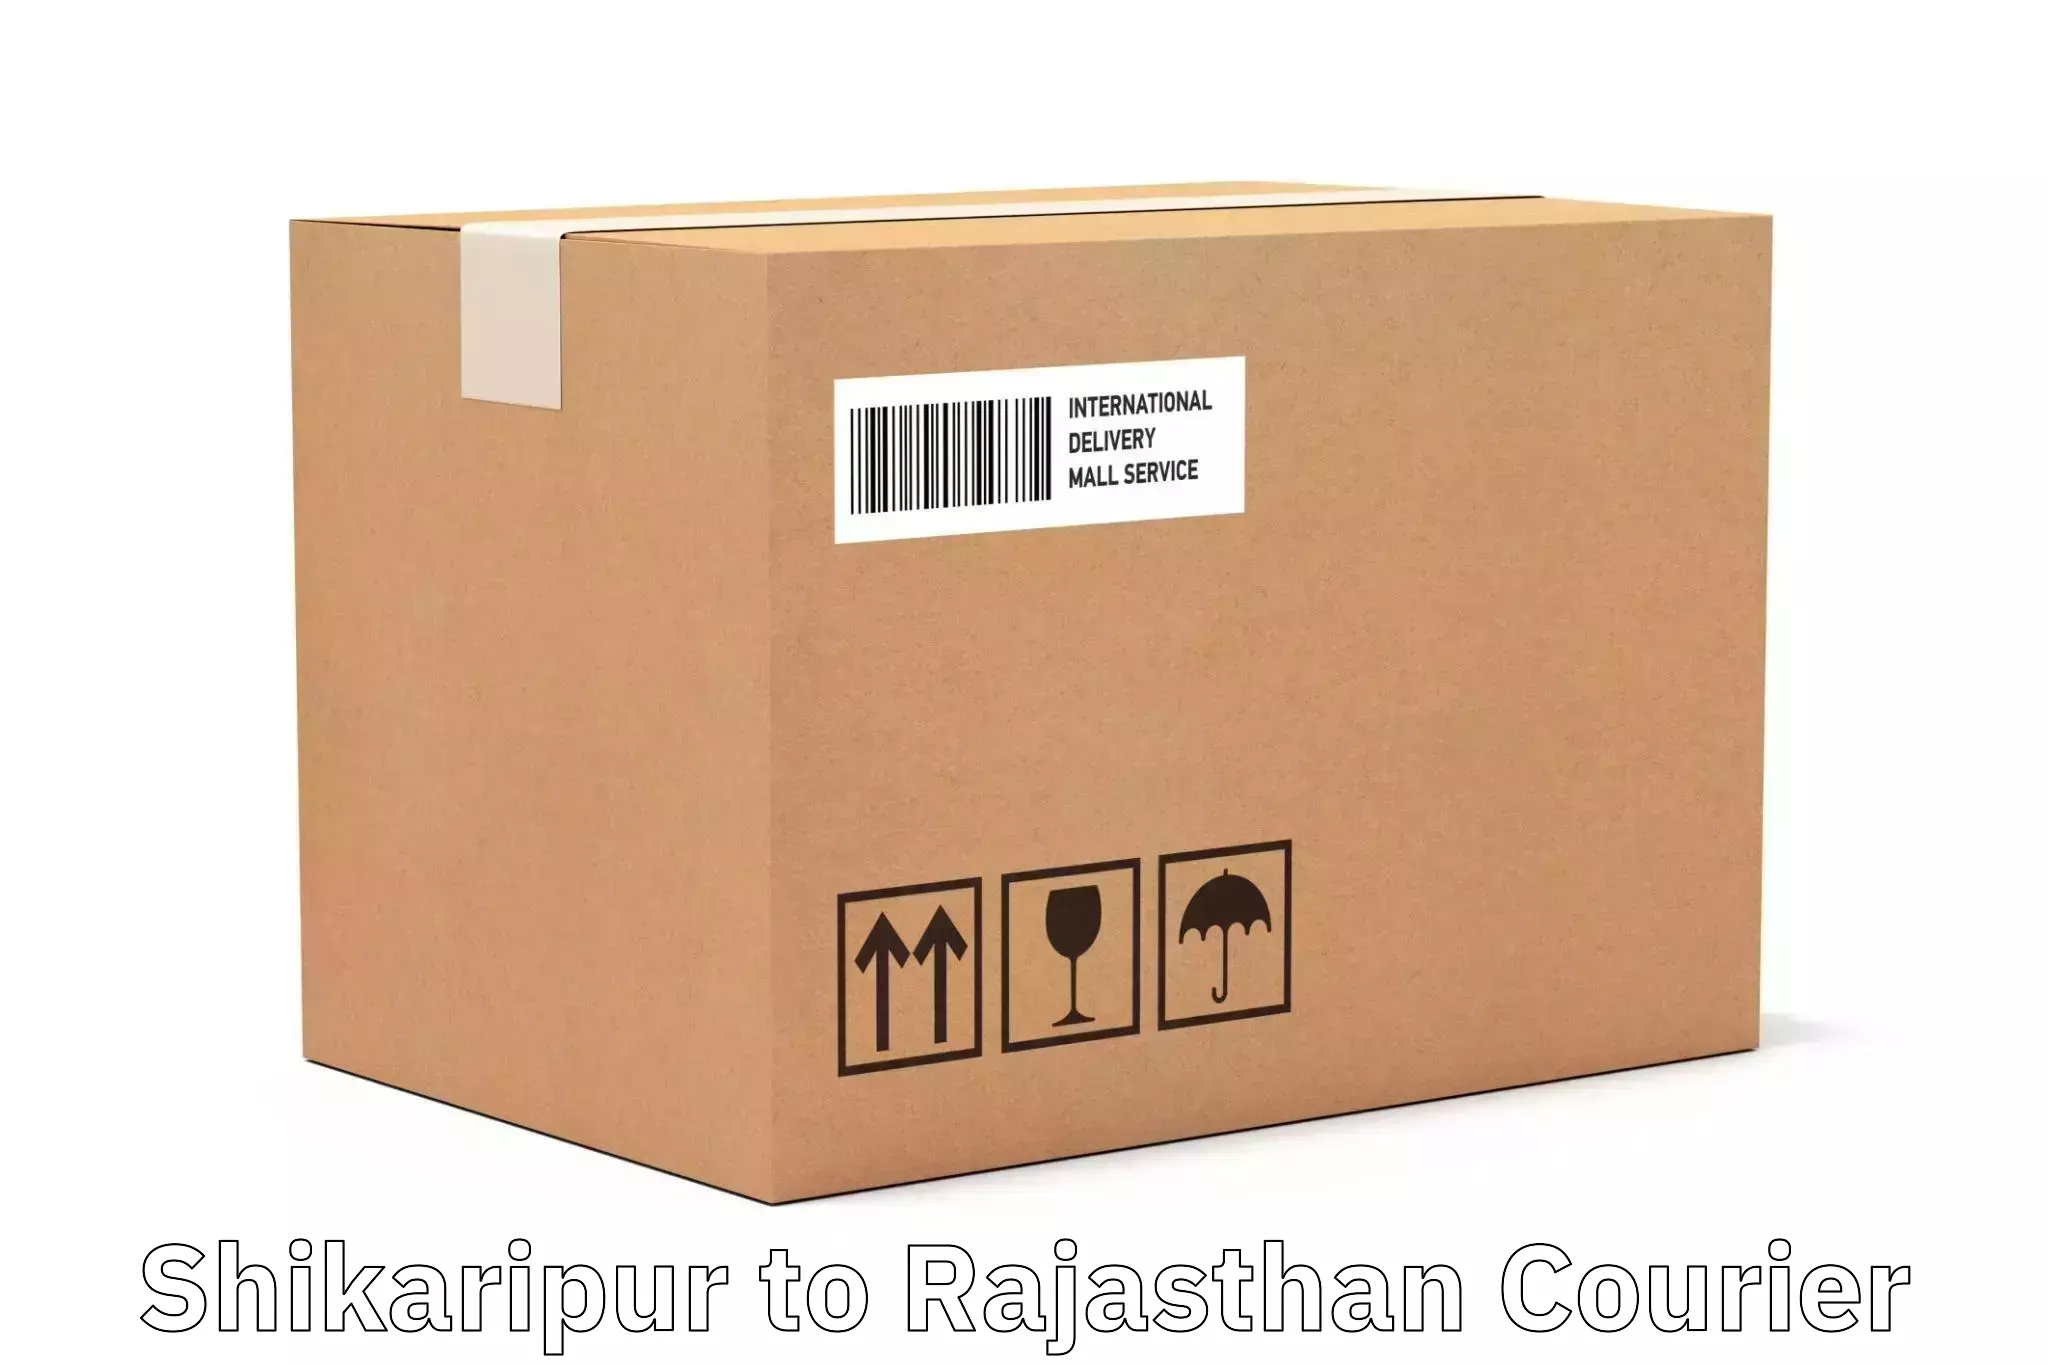 Urgent courier needs Shikaripur to Jaisalmer